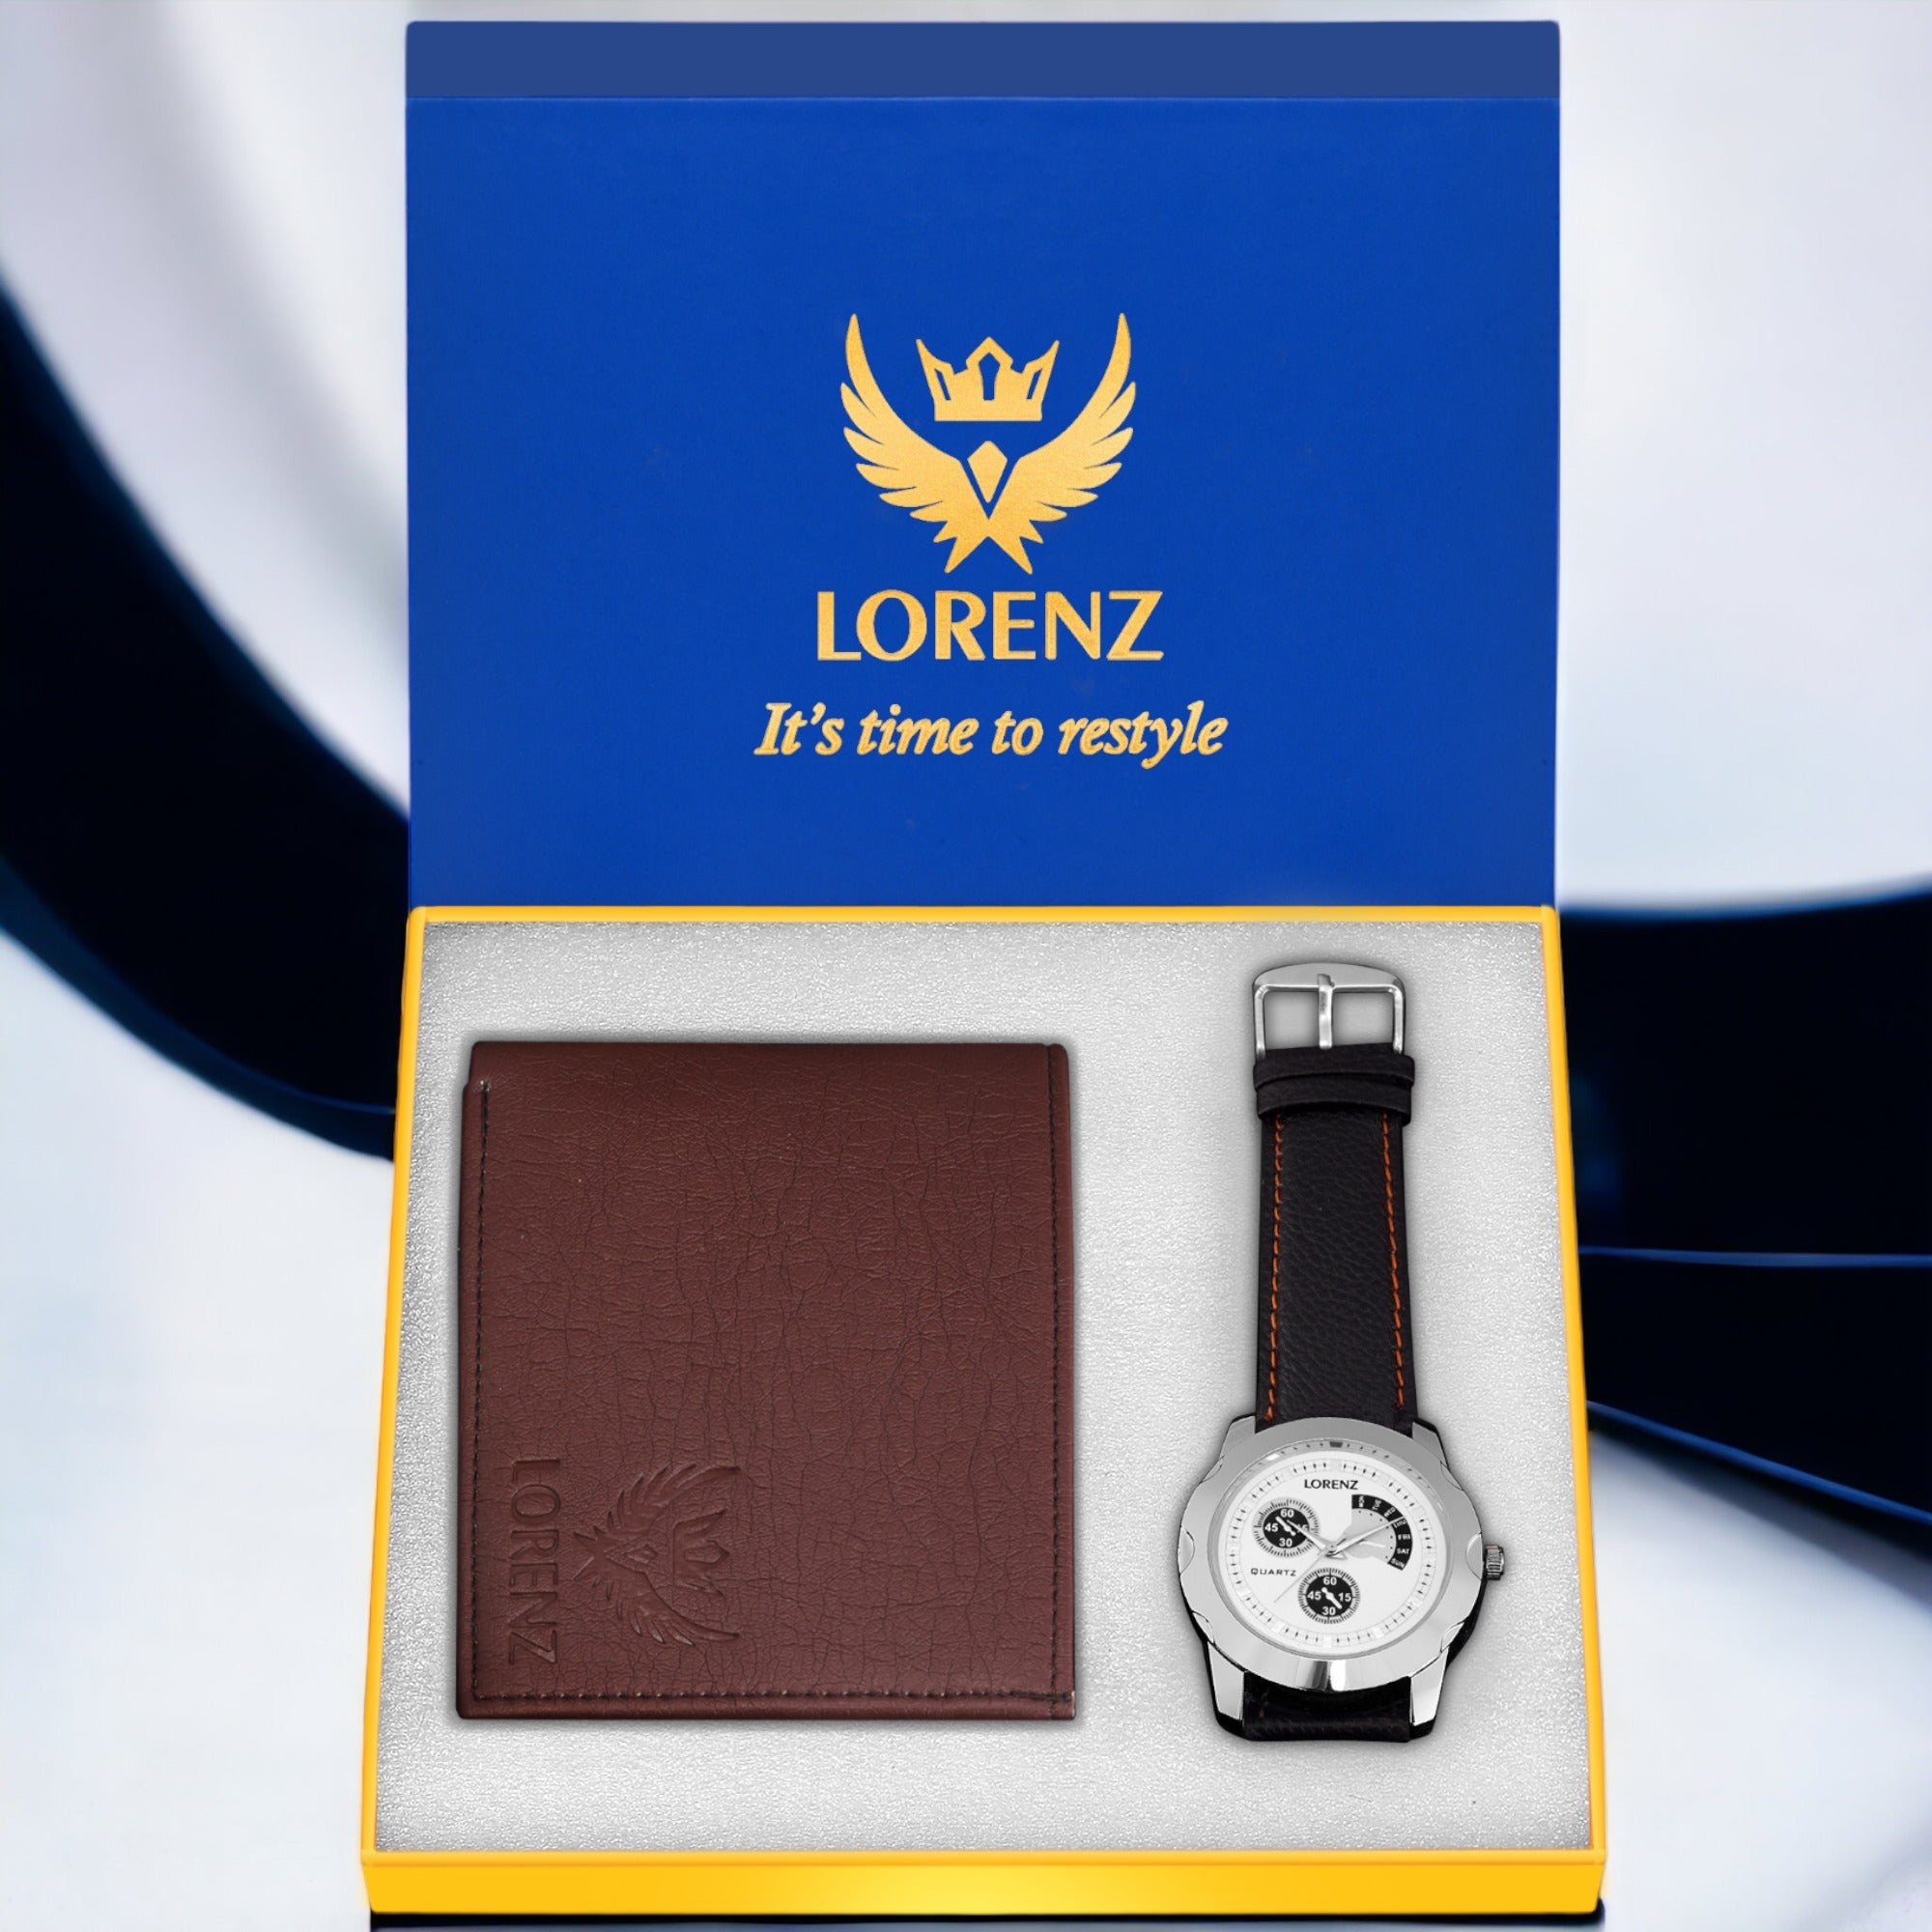 Lorenz Men's Chrono Watch (Black Strap, White Dial) & Brown Leather Wallet Gift Set